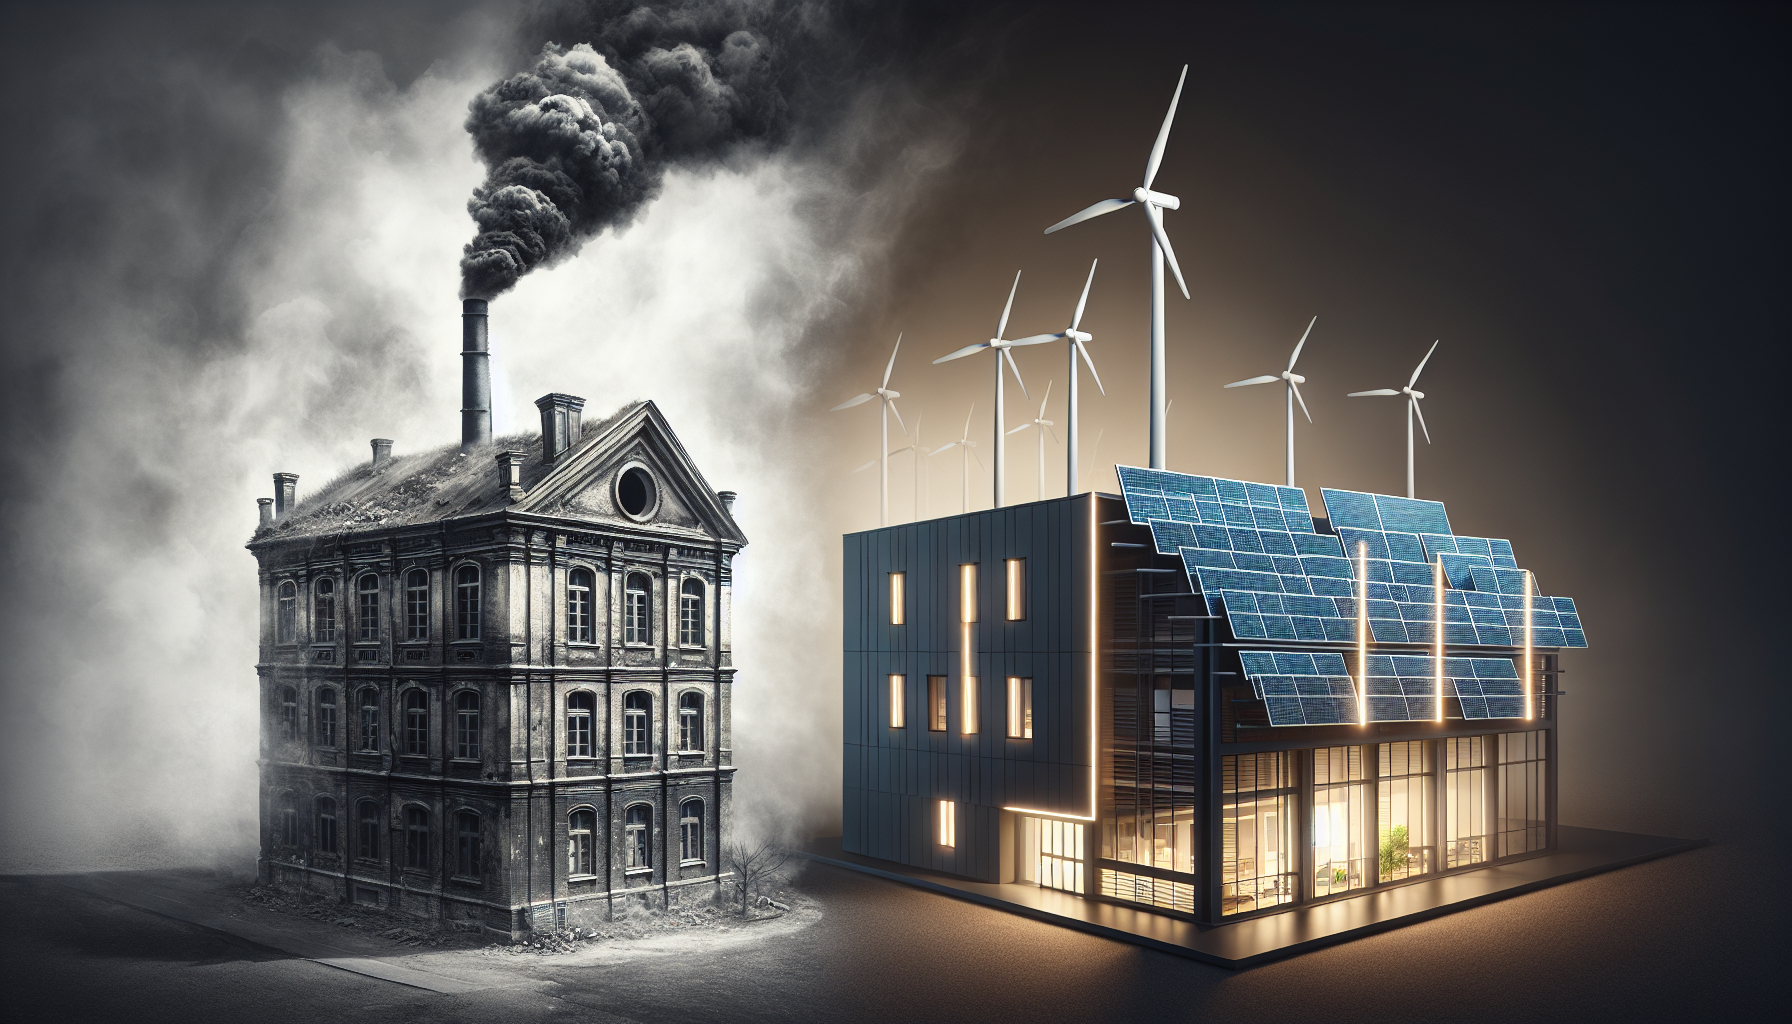 Energetische Betrachtungen und CO2-Ausstoß. Die energetischen Aspekte und der CO2-Ausstoß spielen eine wichtige Rolle bei der Entscheidung zwischen Altbausanierung und Neubau, da sie den Heizenergiebedarf und die Umweltauswirkungen beeinflussen.